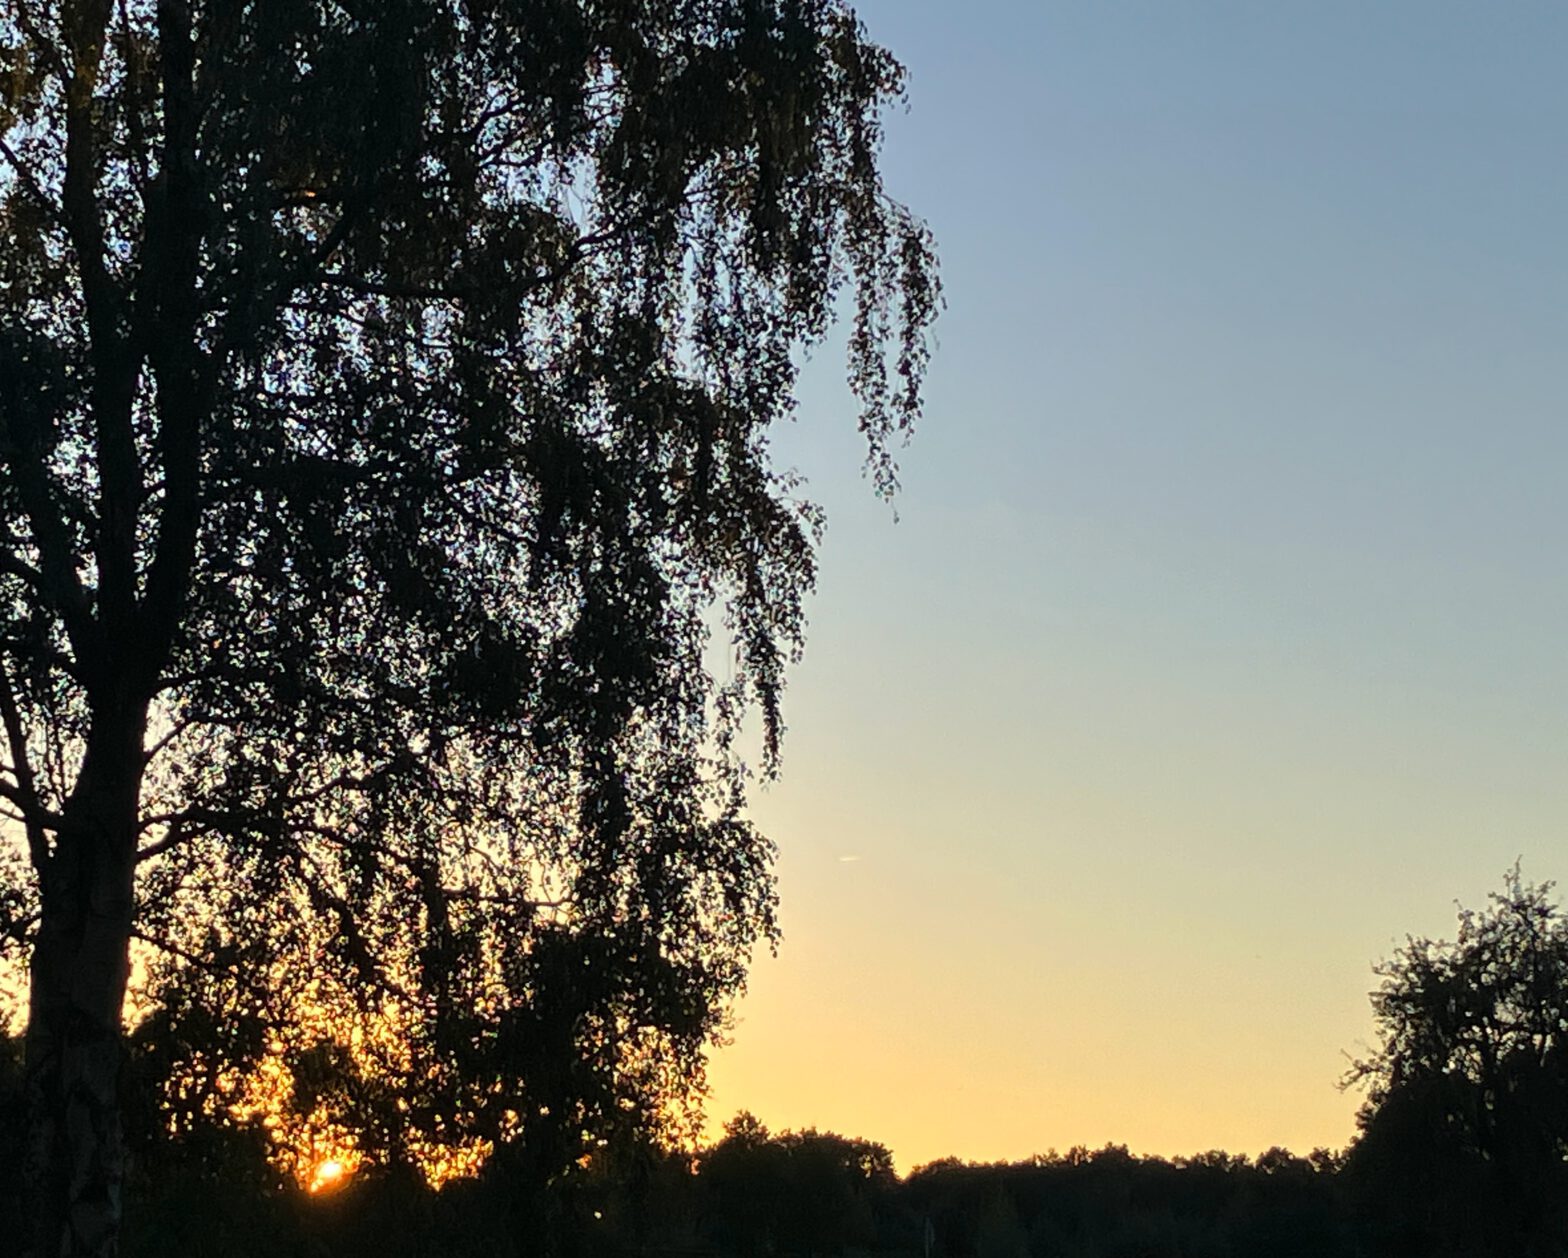 Sonnenuntergang im Hintegrund, noch blauer Himmel, dunkle Baumreihe, im Vordergrund links eine hohe Birke